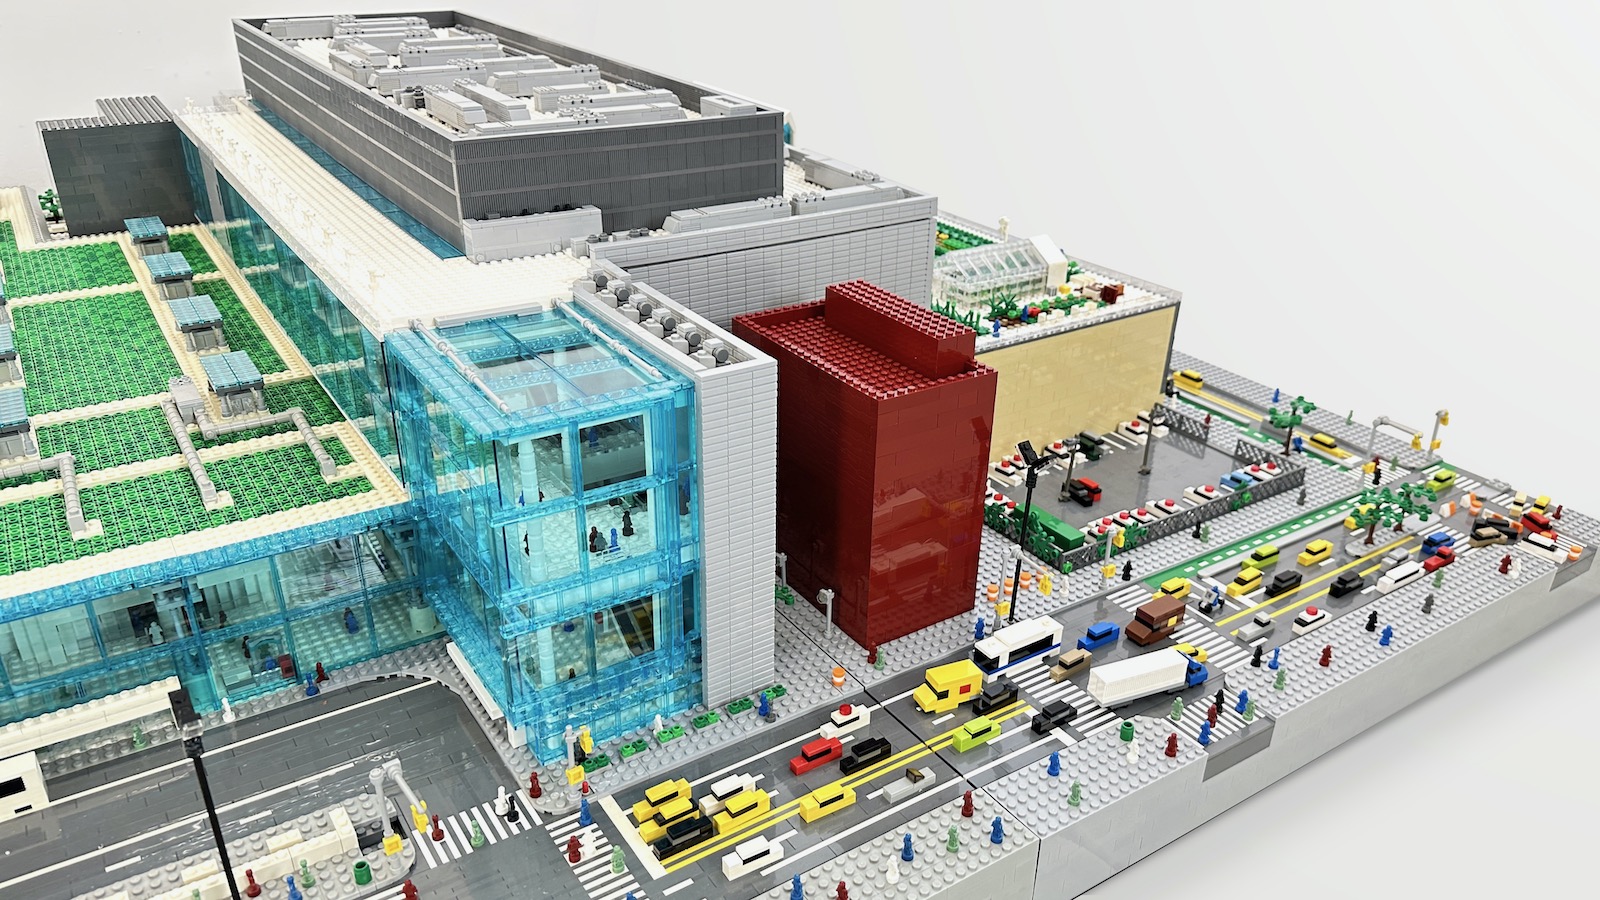 Sean Kenney's art with LEGO bricks - Javits Center (annex)